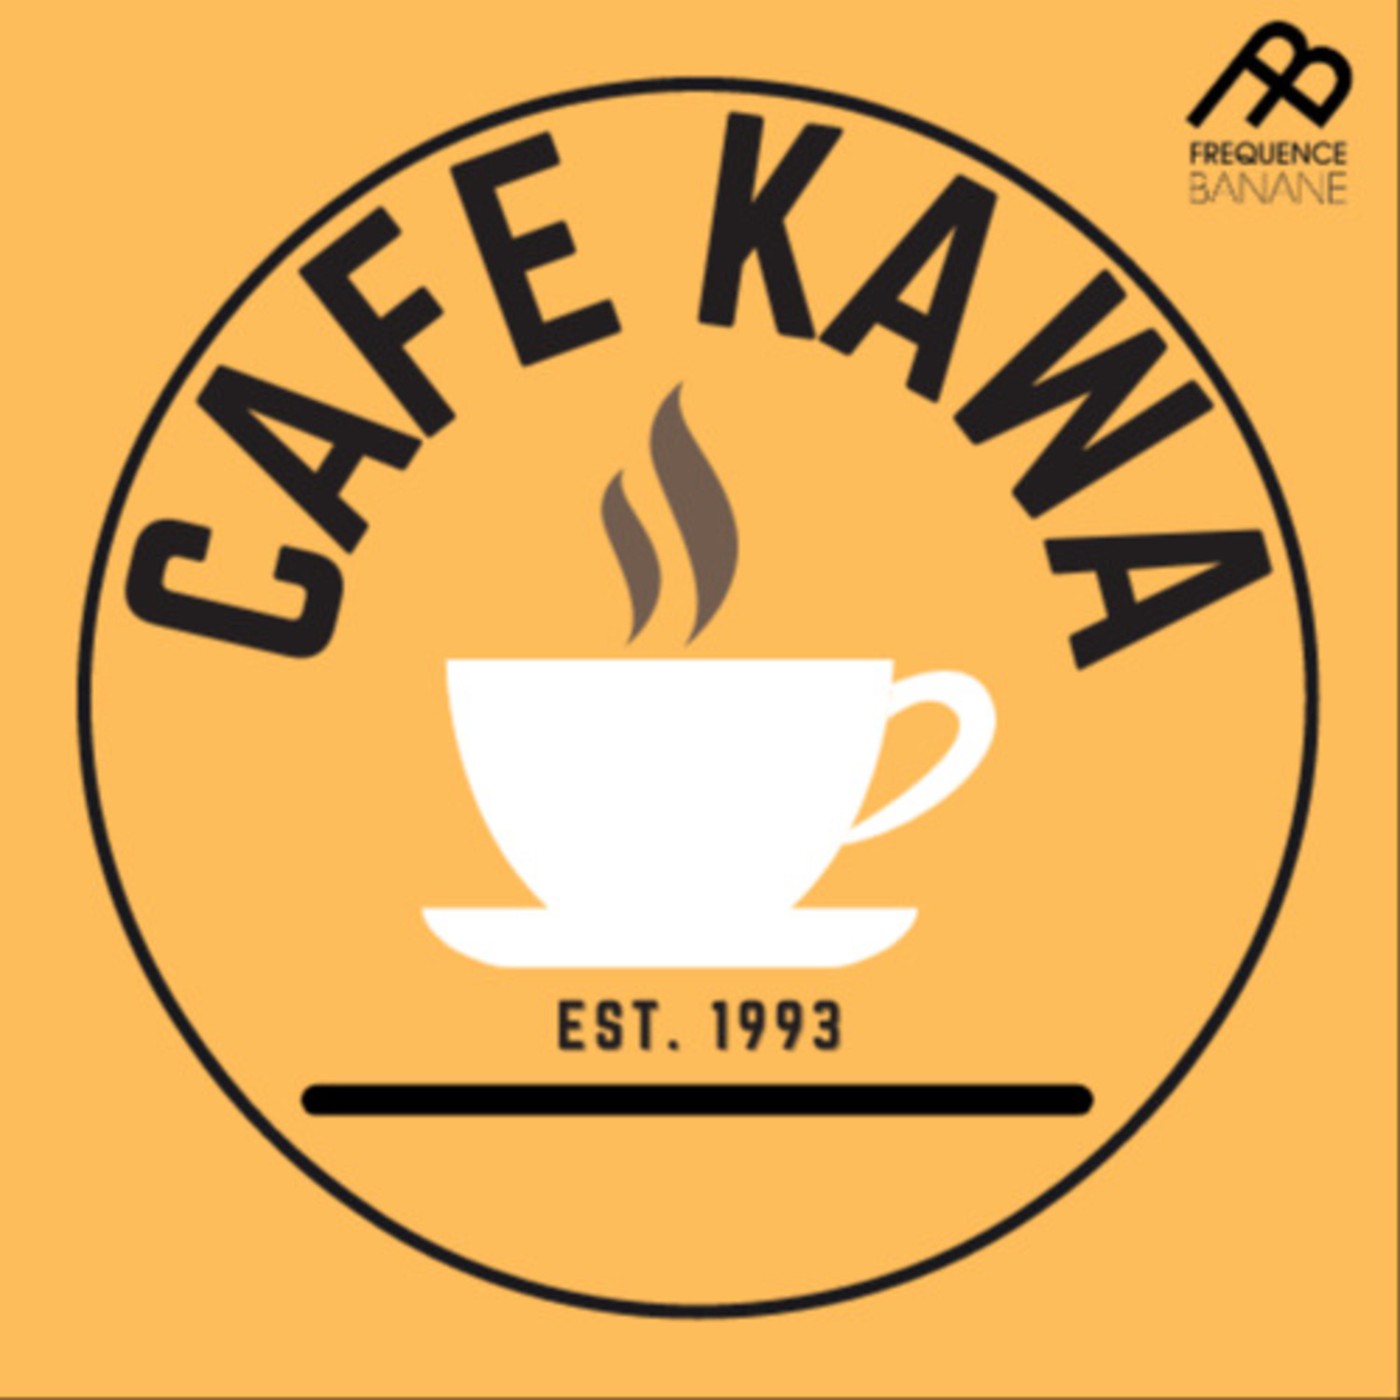 CaféKawa du 26/02 - Les Mercures